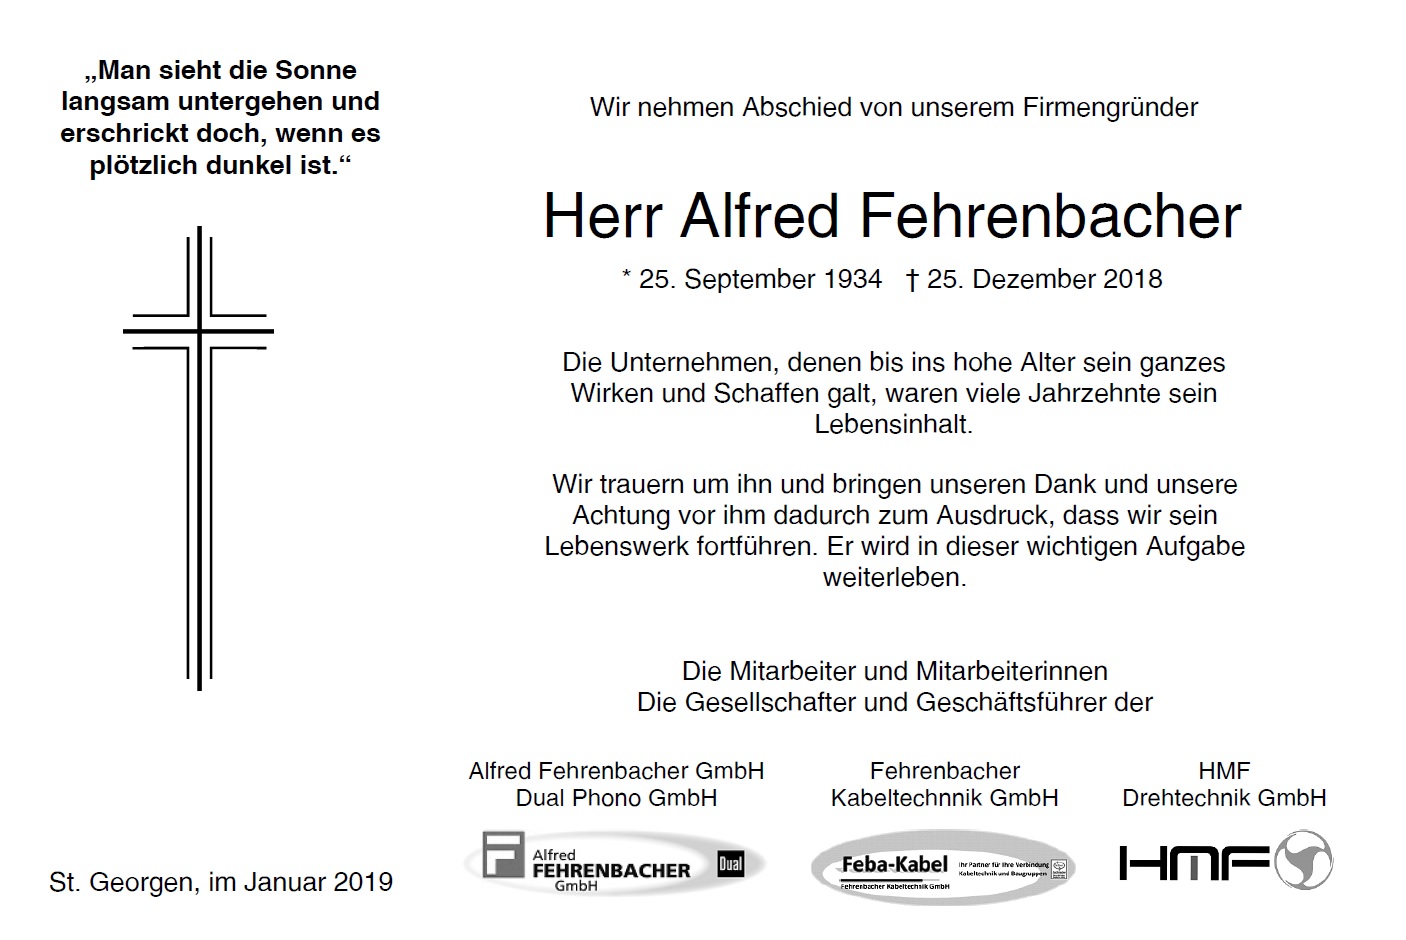 Traueranzeige Alfred Fehrenbacher